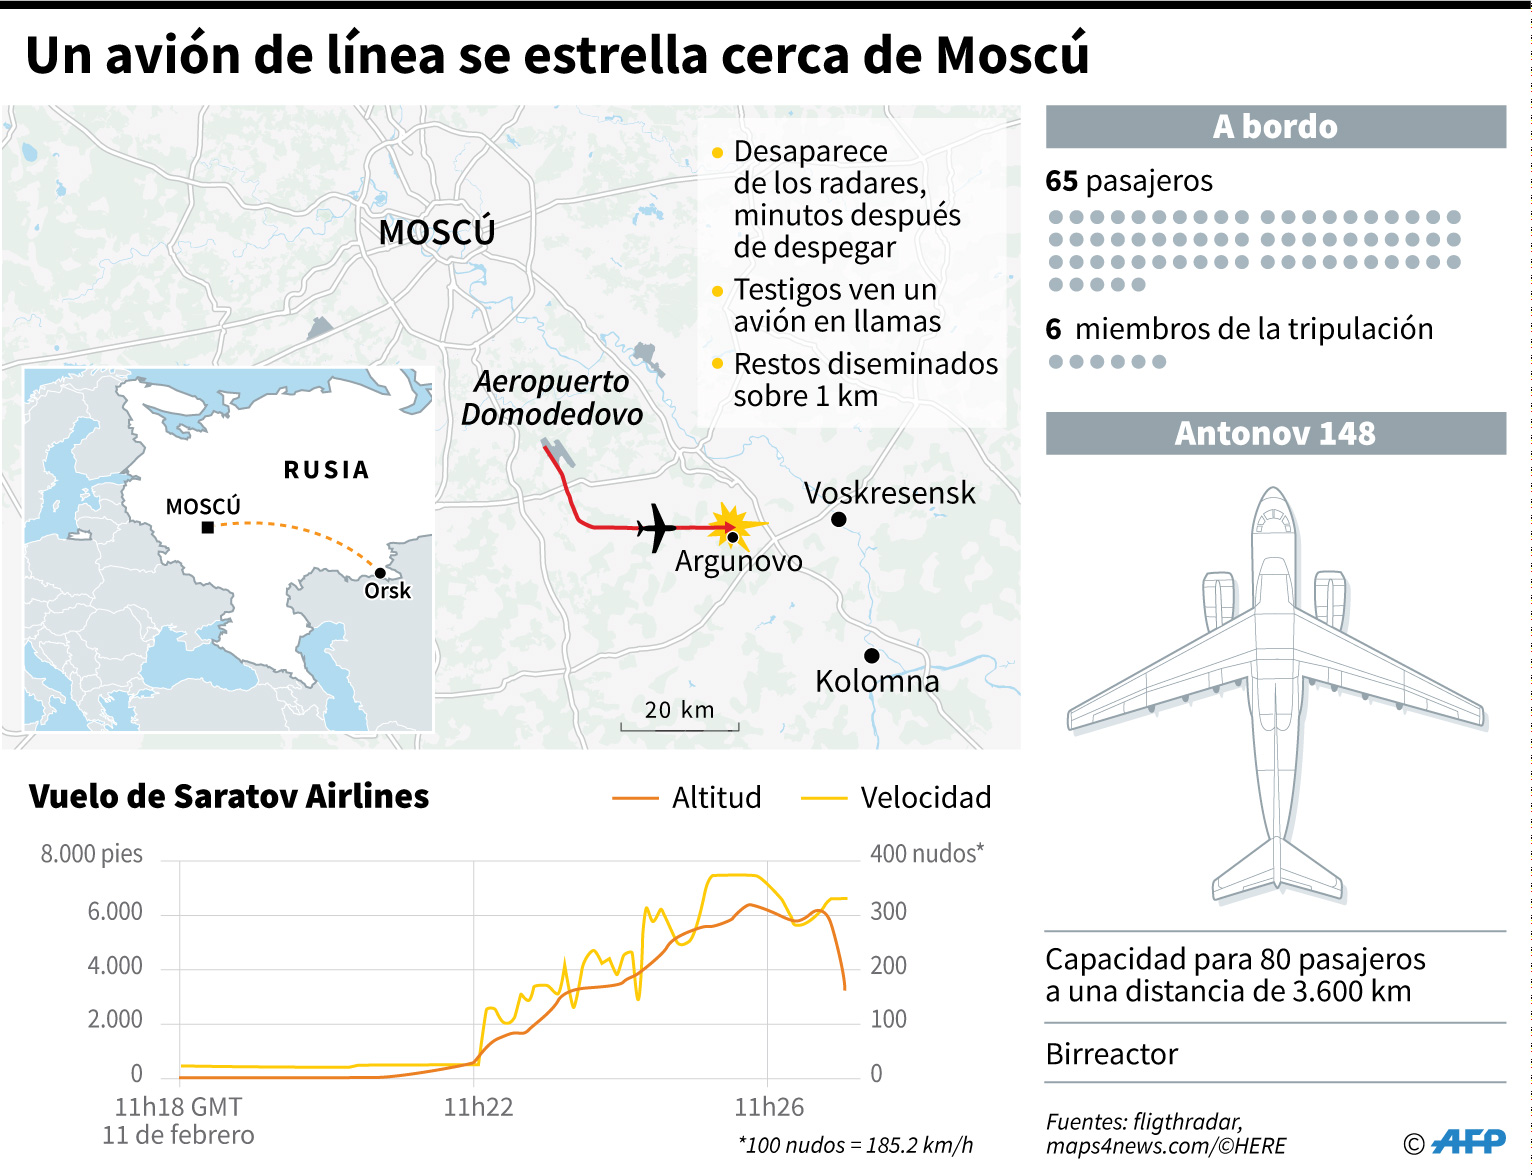 Mueren 71 personas en accidente aéreo cerca de Moscú